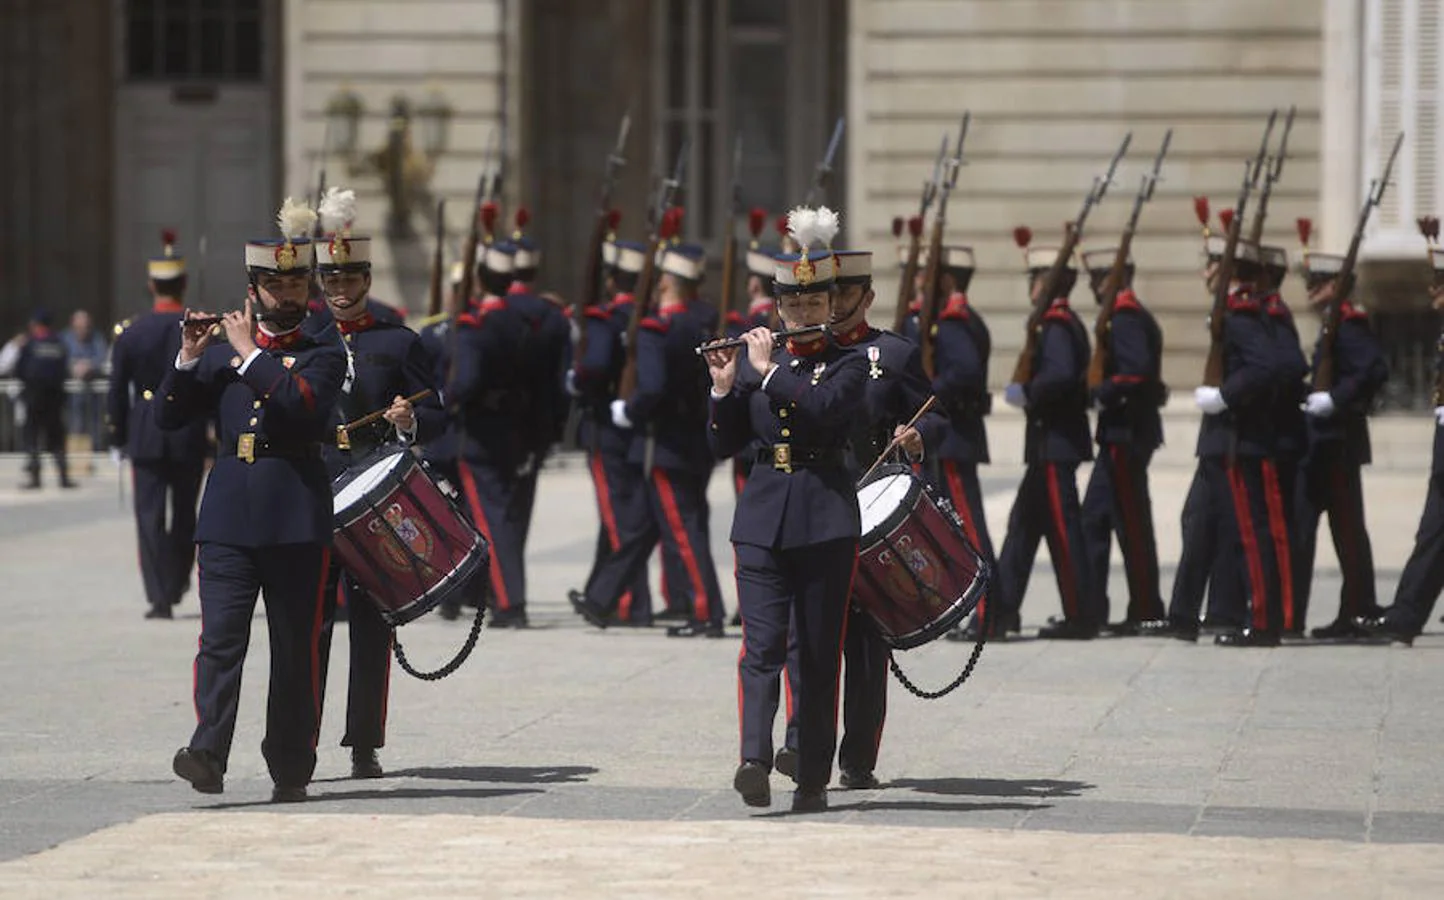 1. Cuerpo mixto. Los alabarderos, hombres y mujeres, desfilan, en este caso tocando diferentes instrumentos musicales, por la explanada frente al Palacio Real.